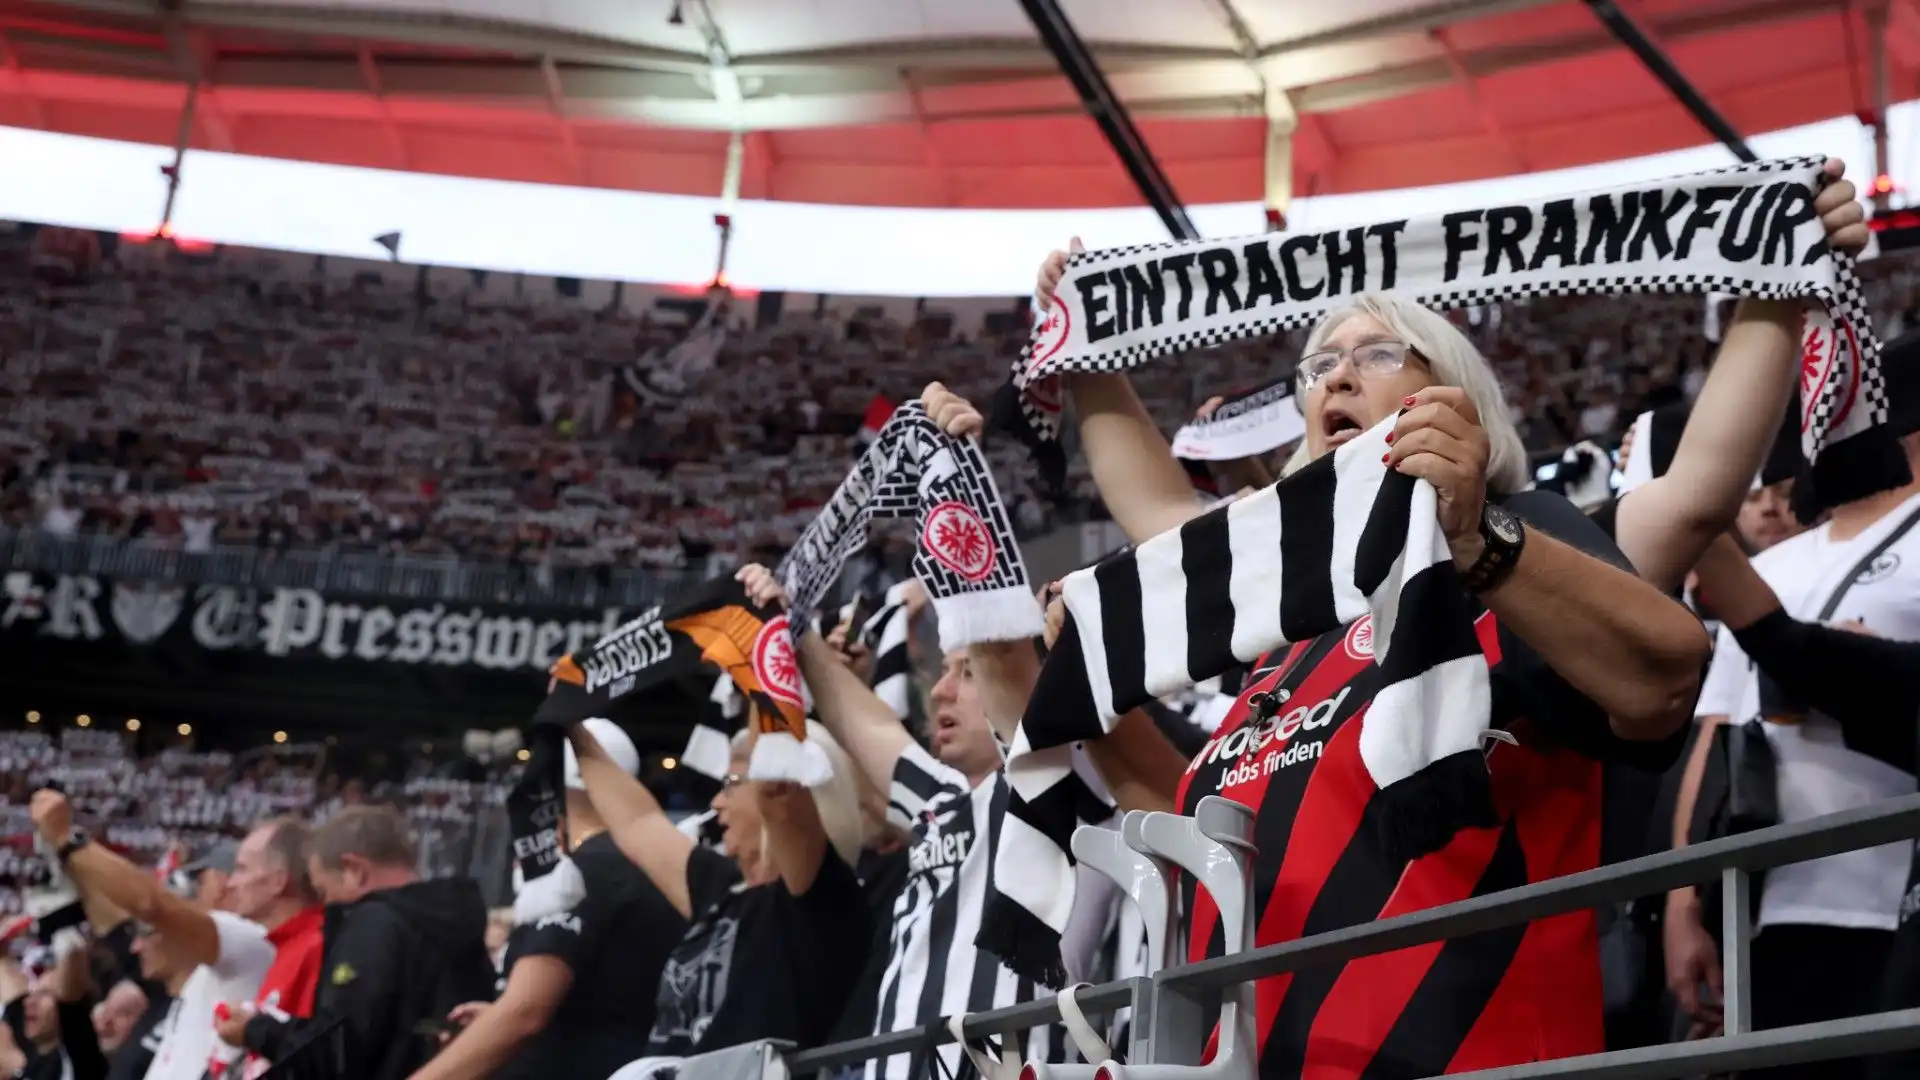 Molti tifosi dell'Eintracht Francoforte sarebbero contenti di vedere l'attaccante nella loro squadra